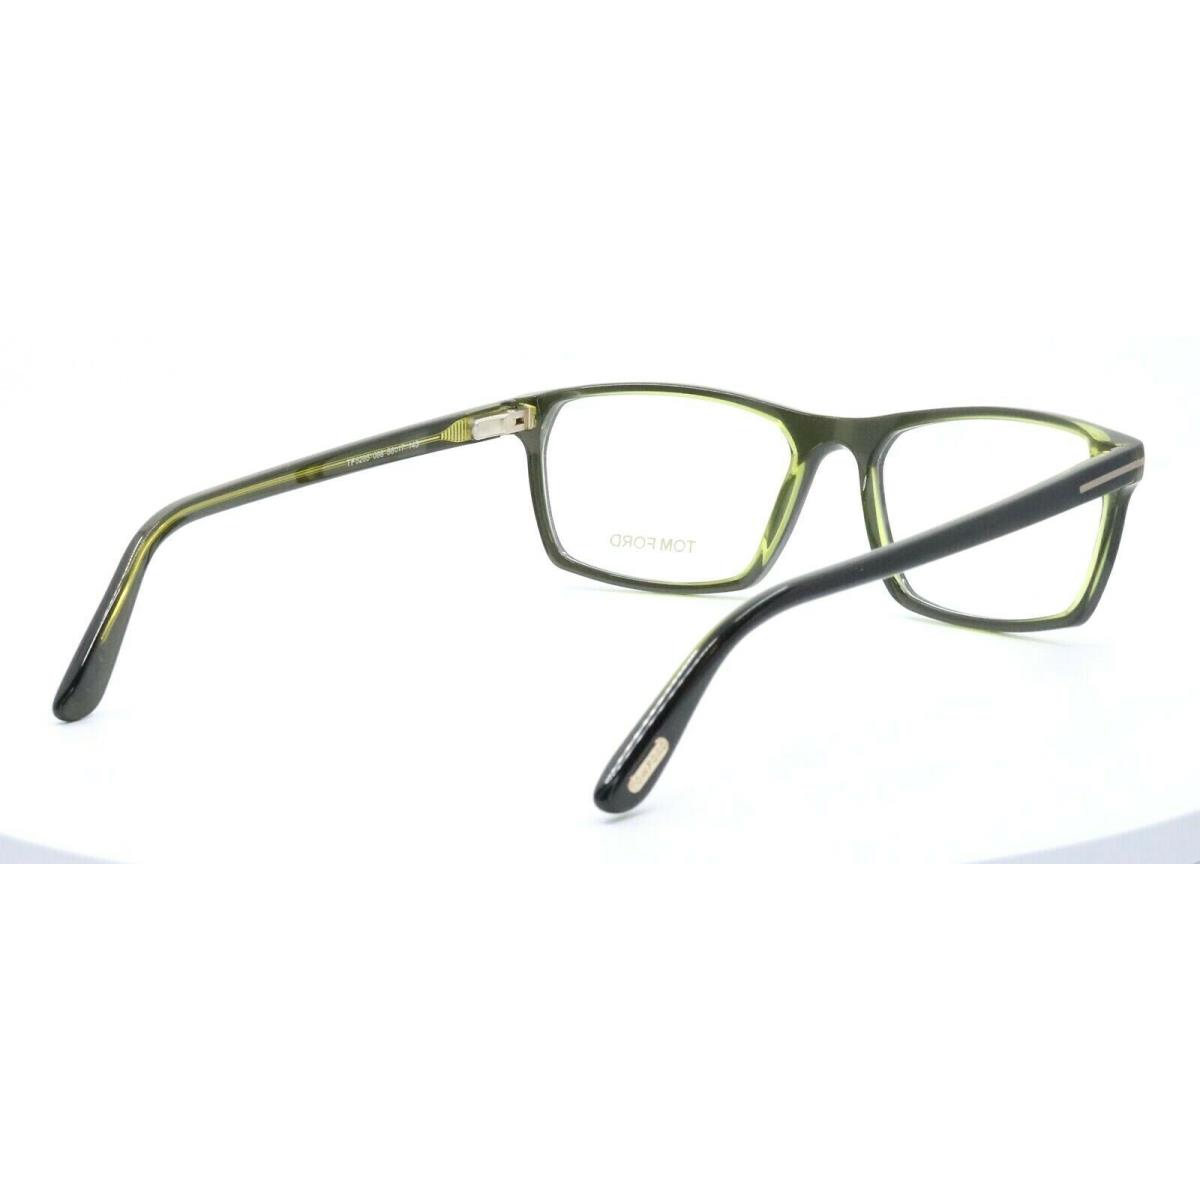 Tom Ford eyeglasses  - Green Frame 10